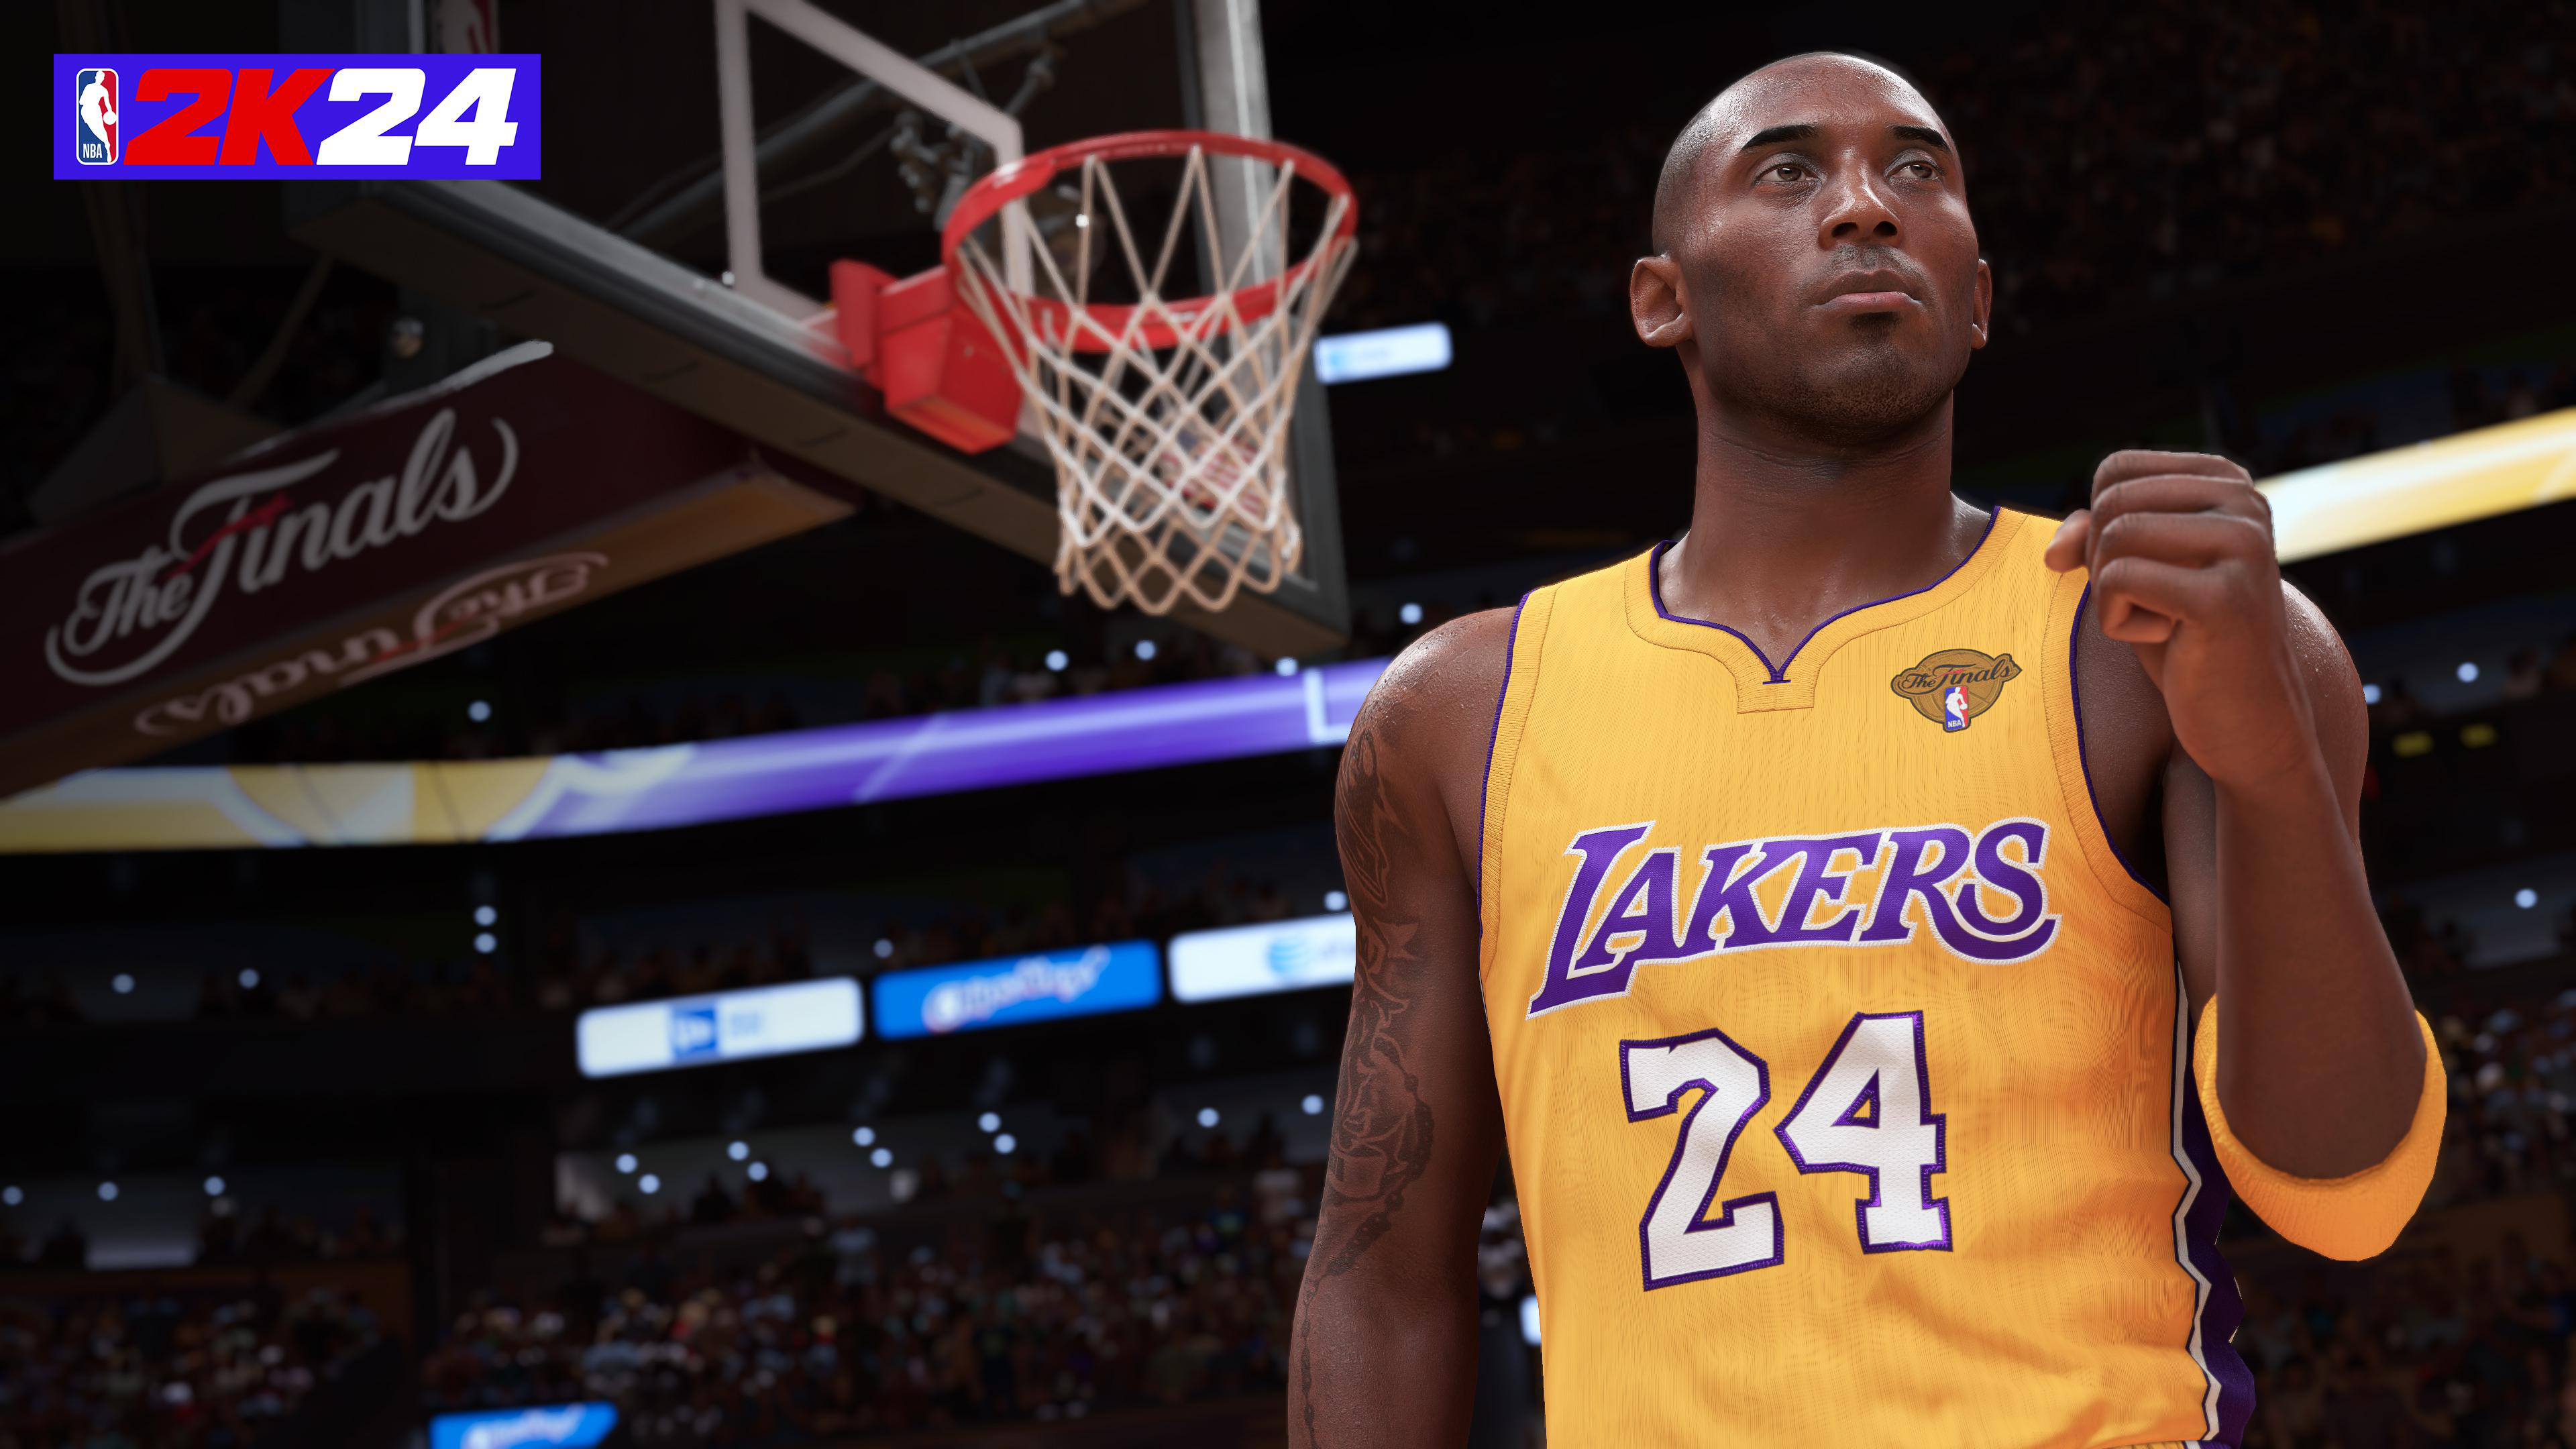 NBA 2K24 - [PlayStation 5